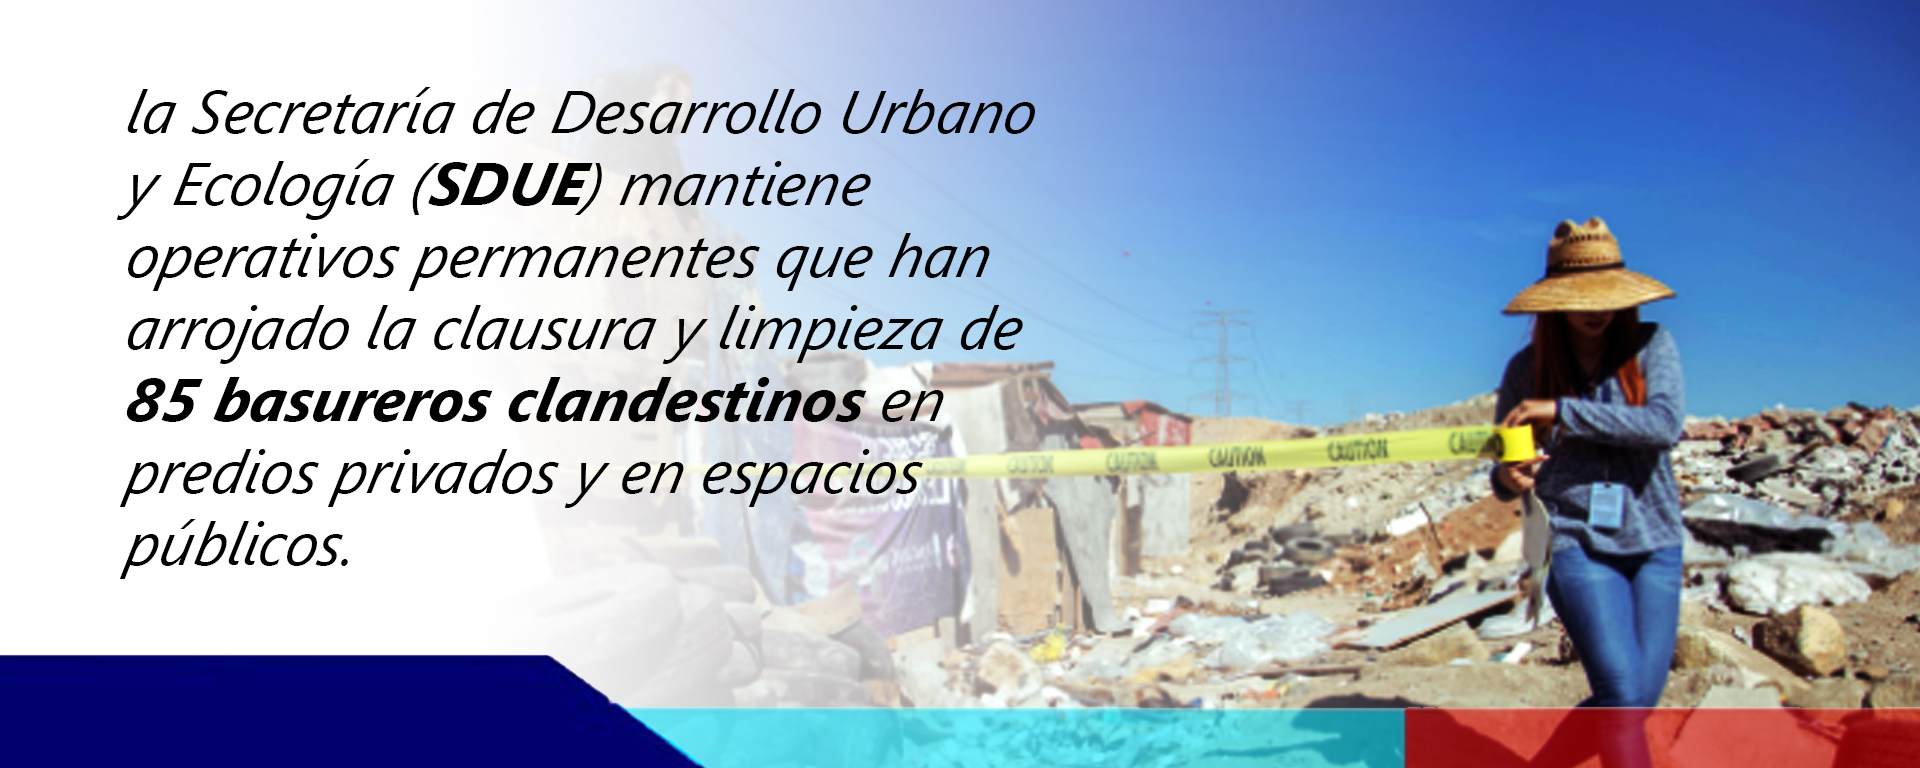 Cierran gran número de basureros clandestinos en Tijuana